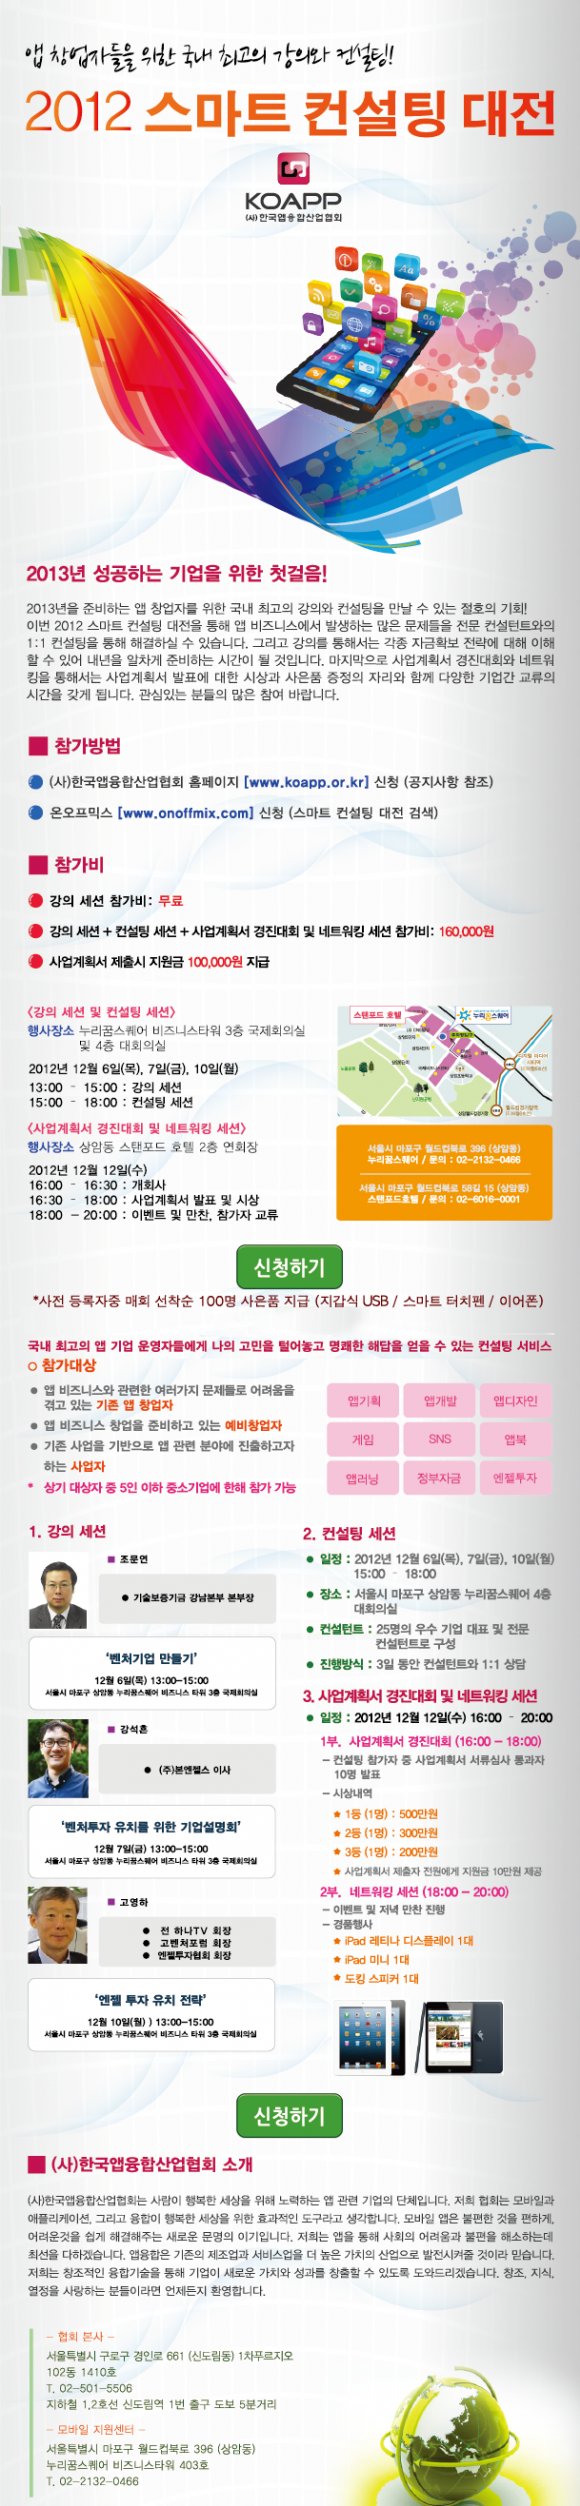 앱 창업자를 위한 "2012 스마트 컨설팅 대전" 개최!!